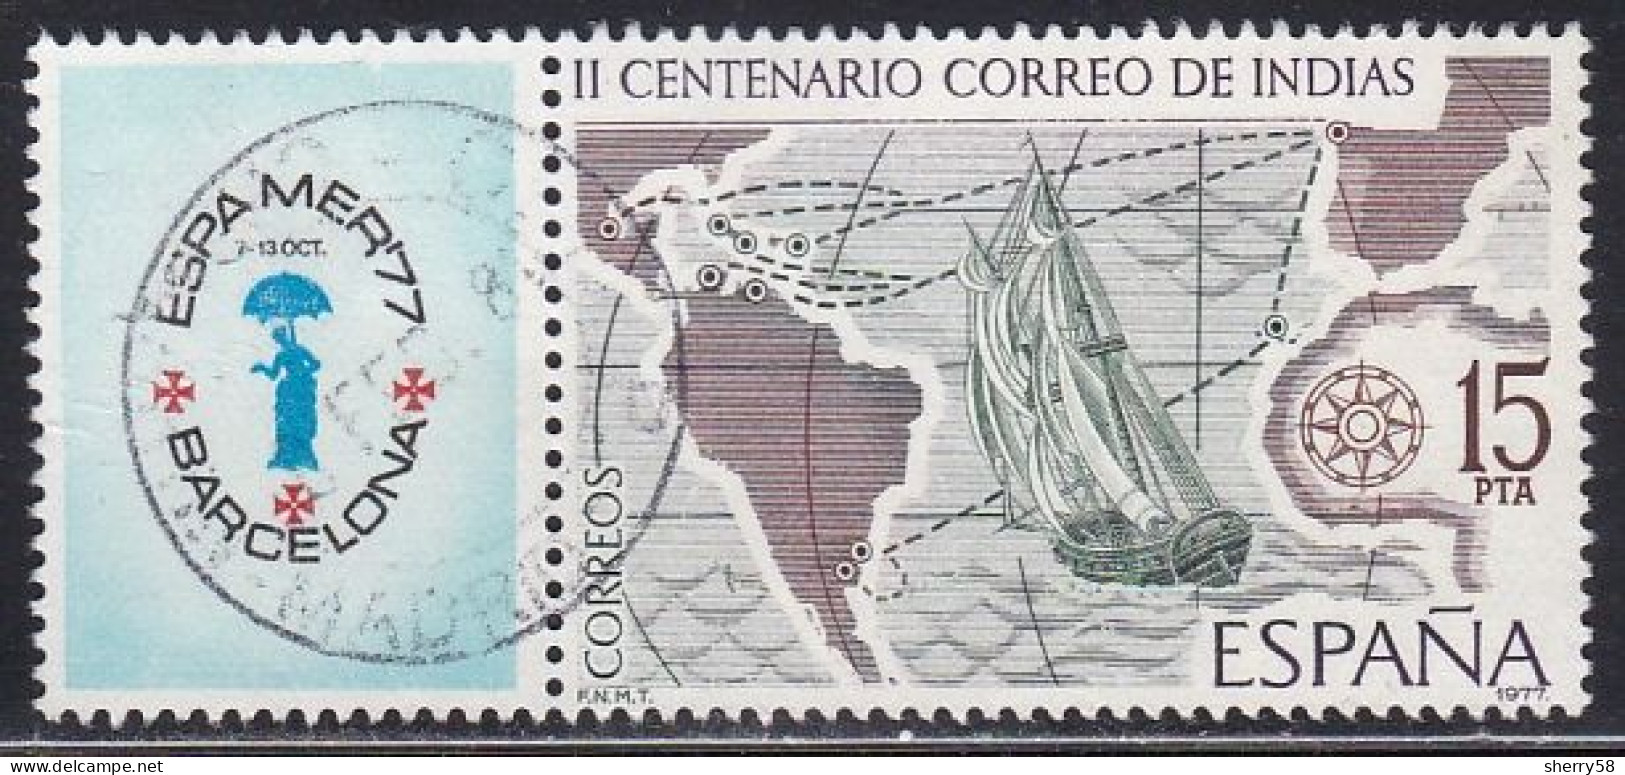 1977-ED. 2437-COMPLETA CON BANDELETA-CORREO MARITIMO.ESPAMER'77-USADO - Oblitérés